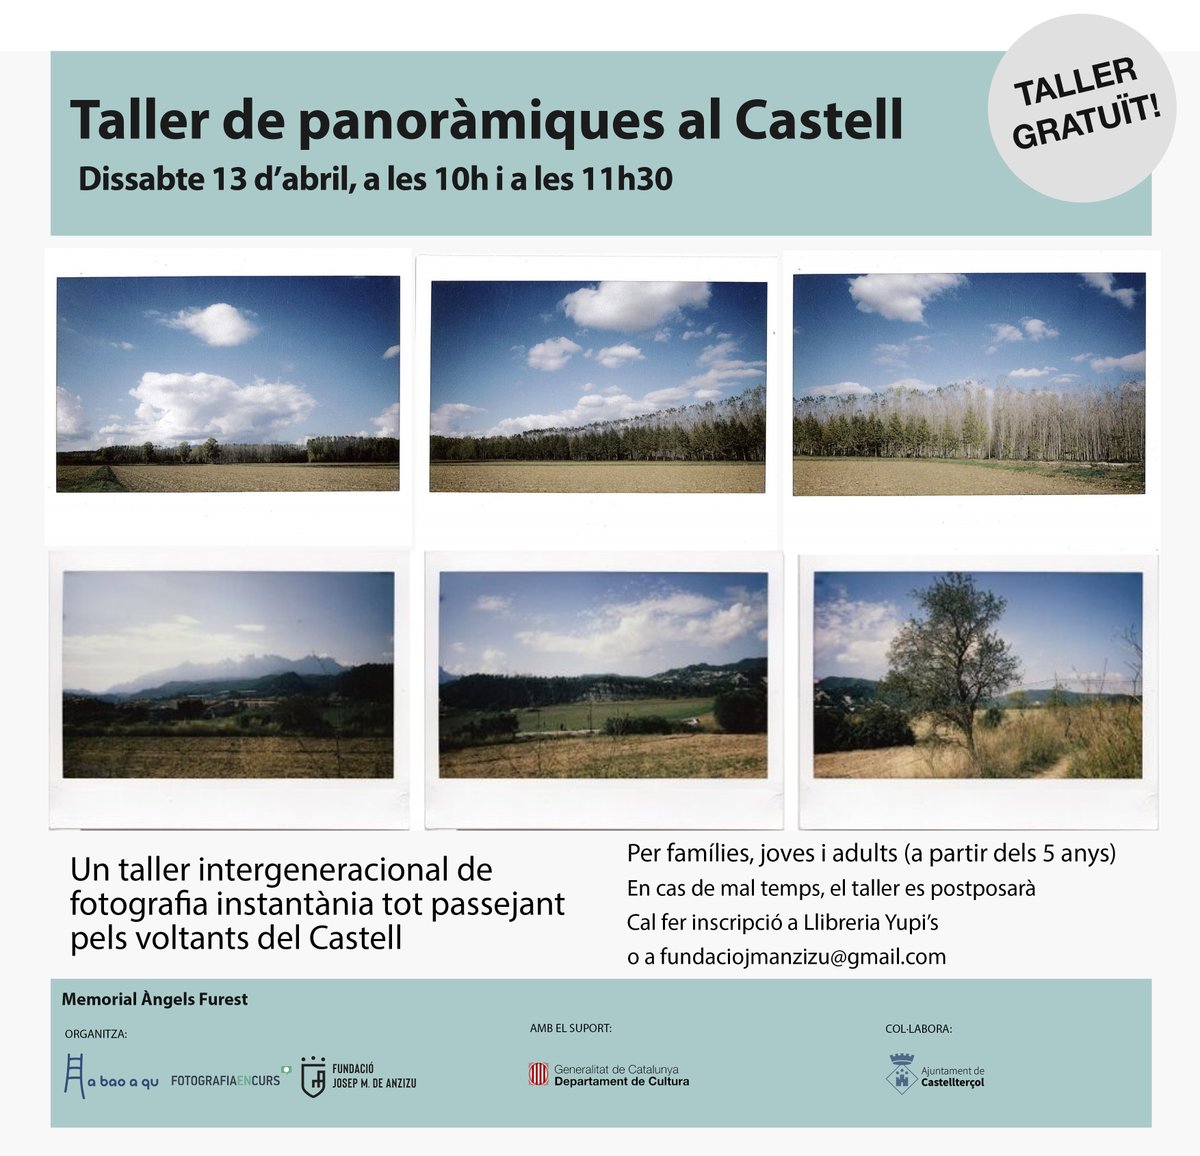 📣Dissabte 13 d’abril al matí, vine a conèixer els entorns del Castell de Castellterçol en un taller intergeneracional de fotografia instantània! Tot passejant pels voltants del Castell i inspirats per fotografies de fotògrafes, crearem panoràmiques amb càmera Instax. 📷